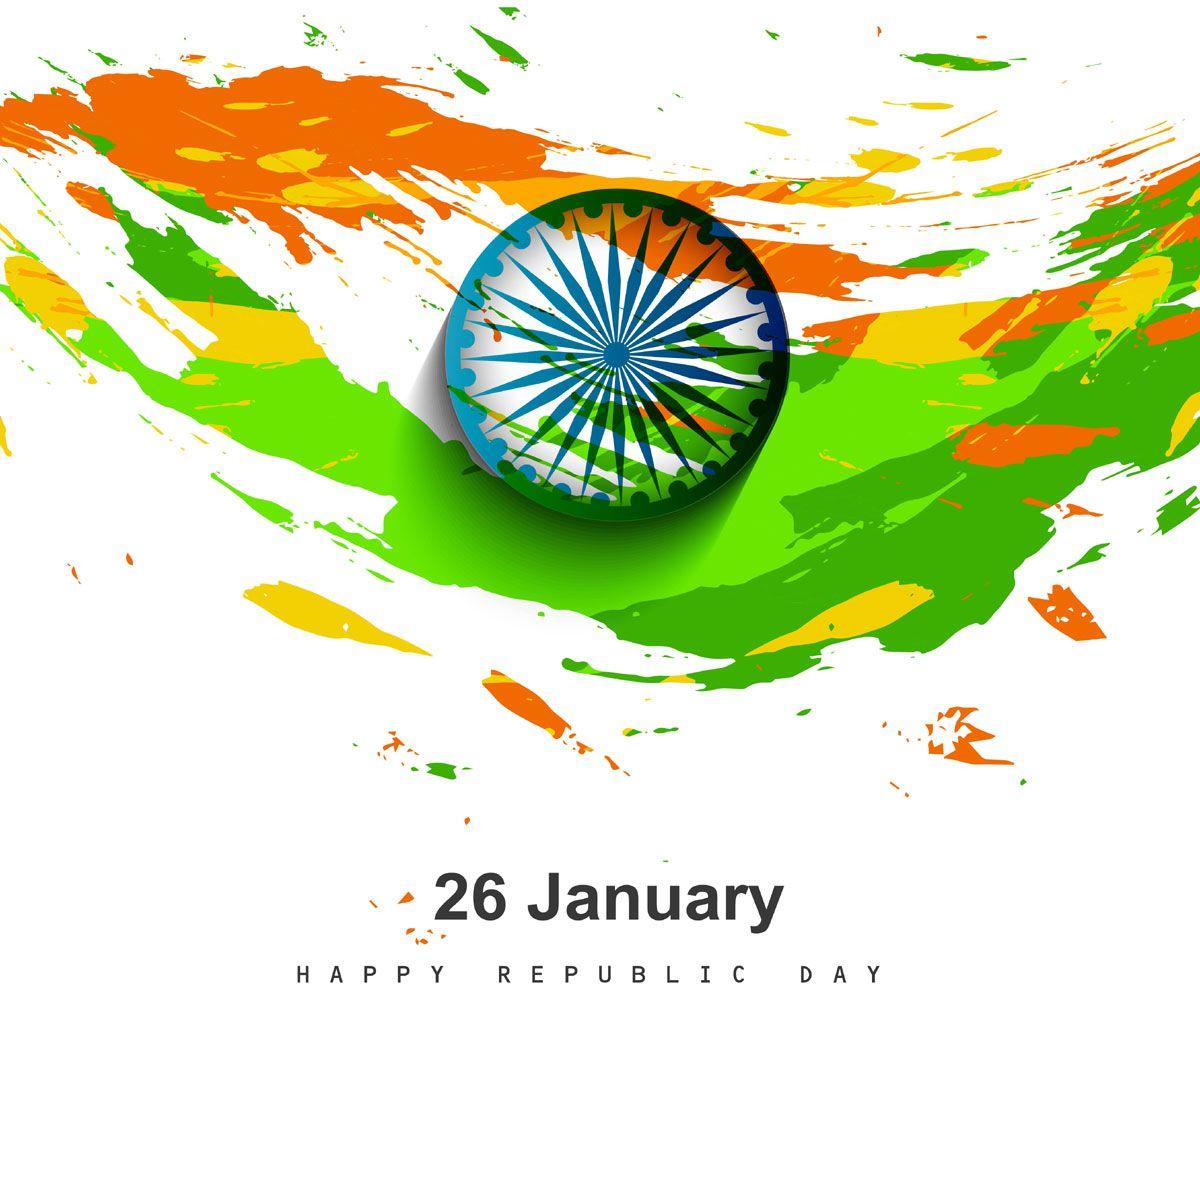 Happy Republic Day Wallpaper. Republic day india, Happy republic day wallpaper, Republic day